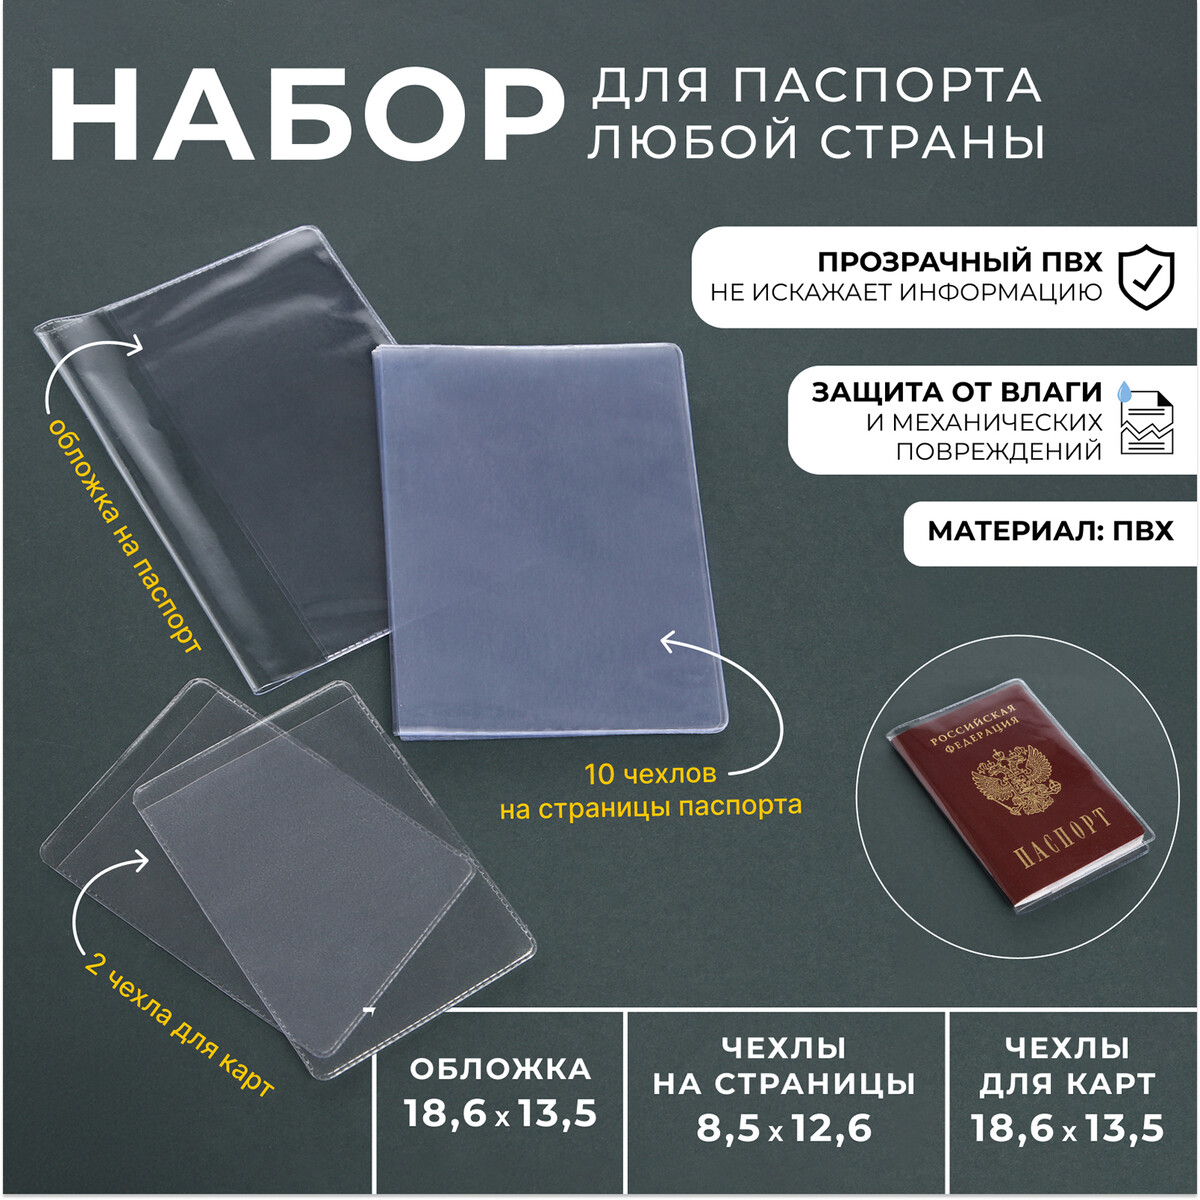 Набор для паспорта: обложка на паспорт; 10 чехлов на страницы паспорта, 2 чехла для карт, цвет прозрачный No brand